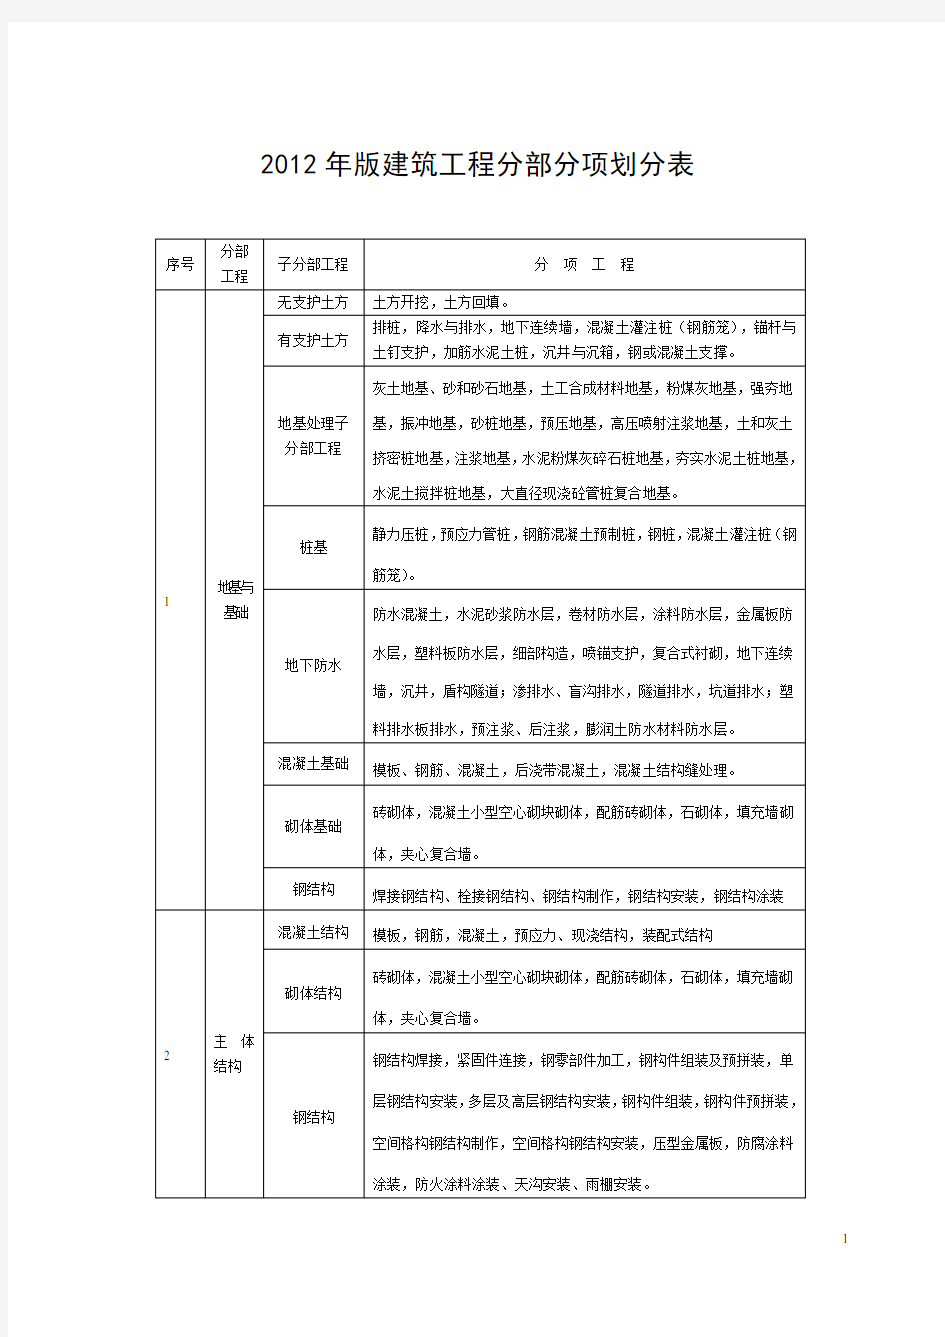 福建省建筑工程施工文件管理规程2013年实施新版施工分册